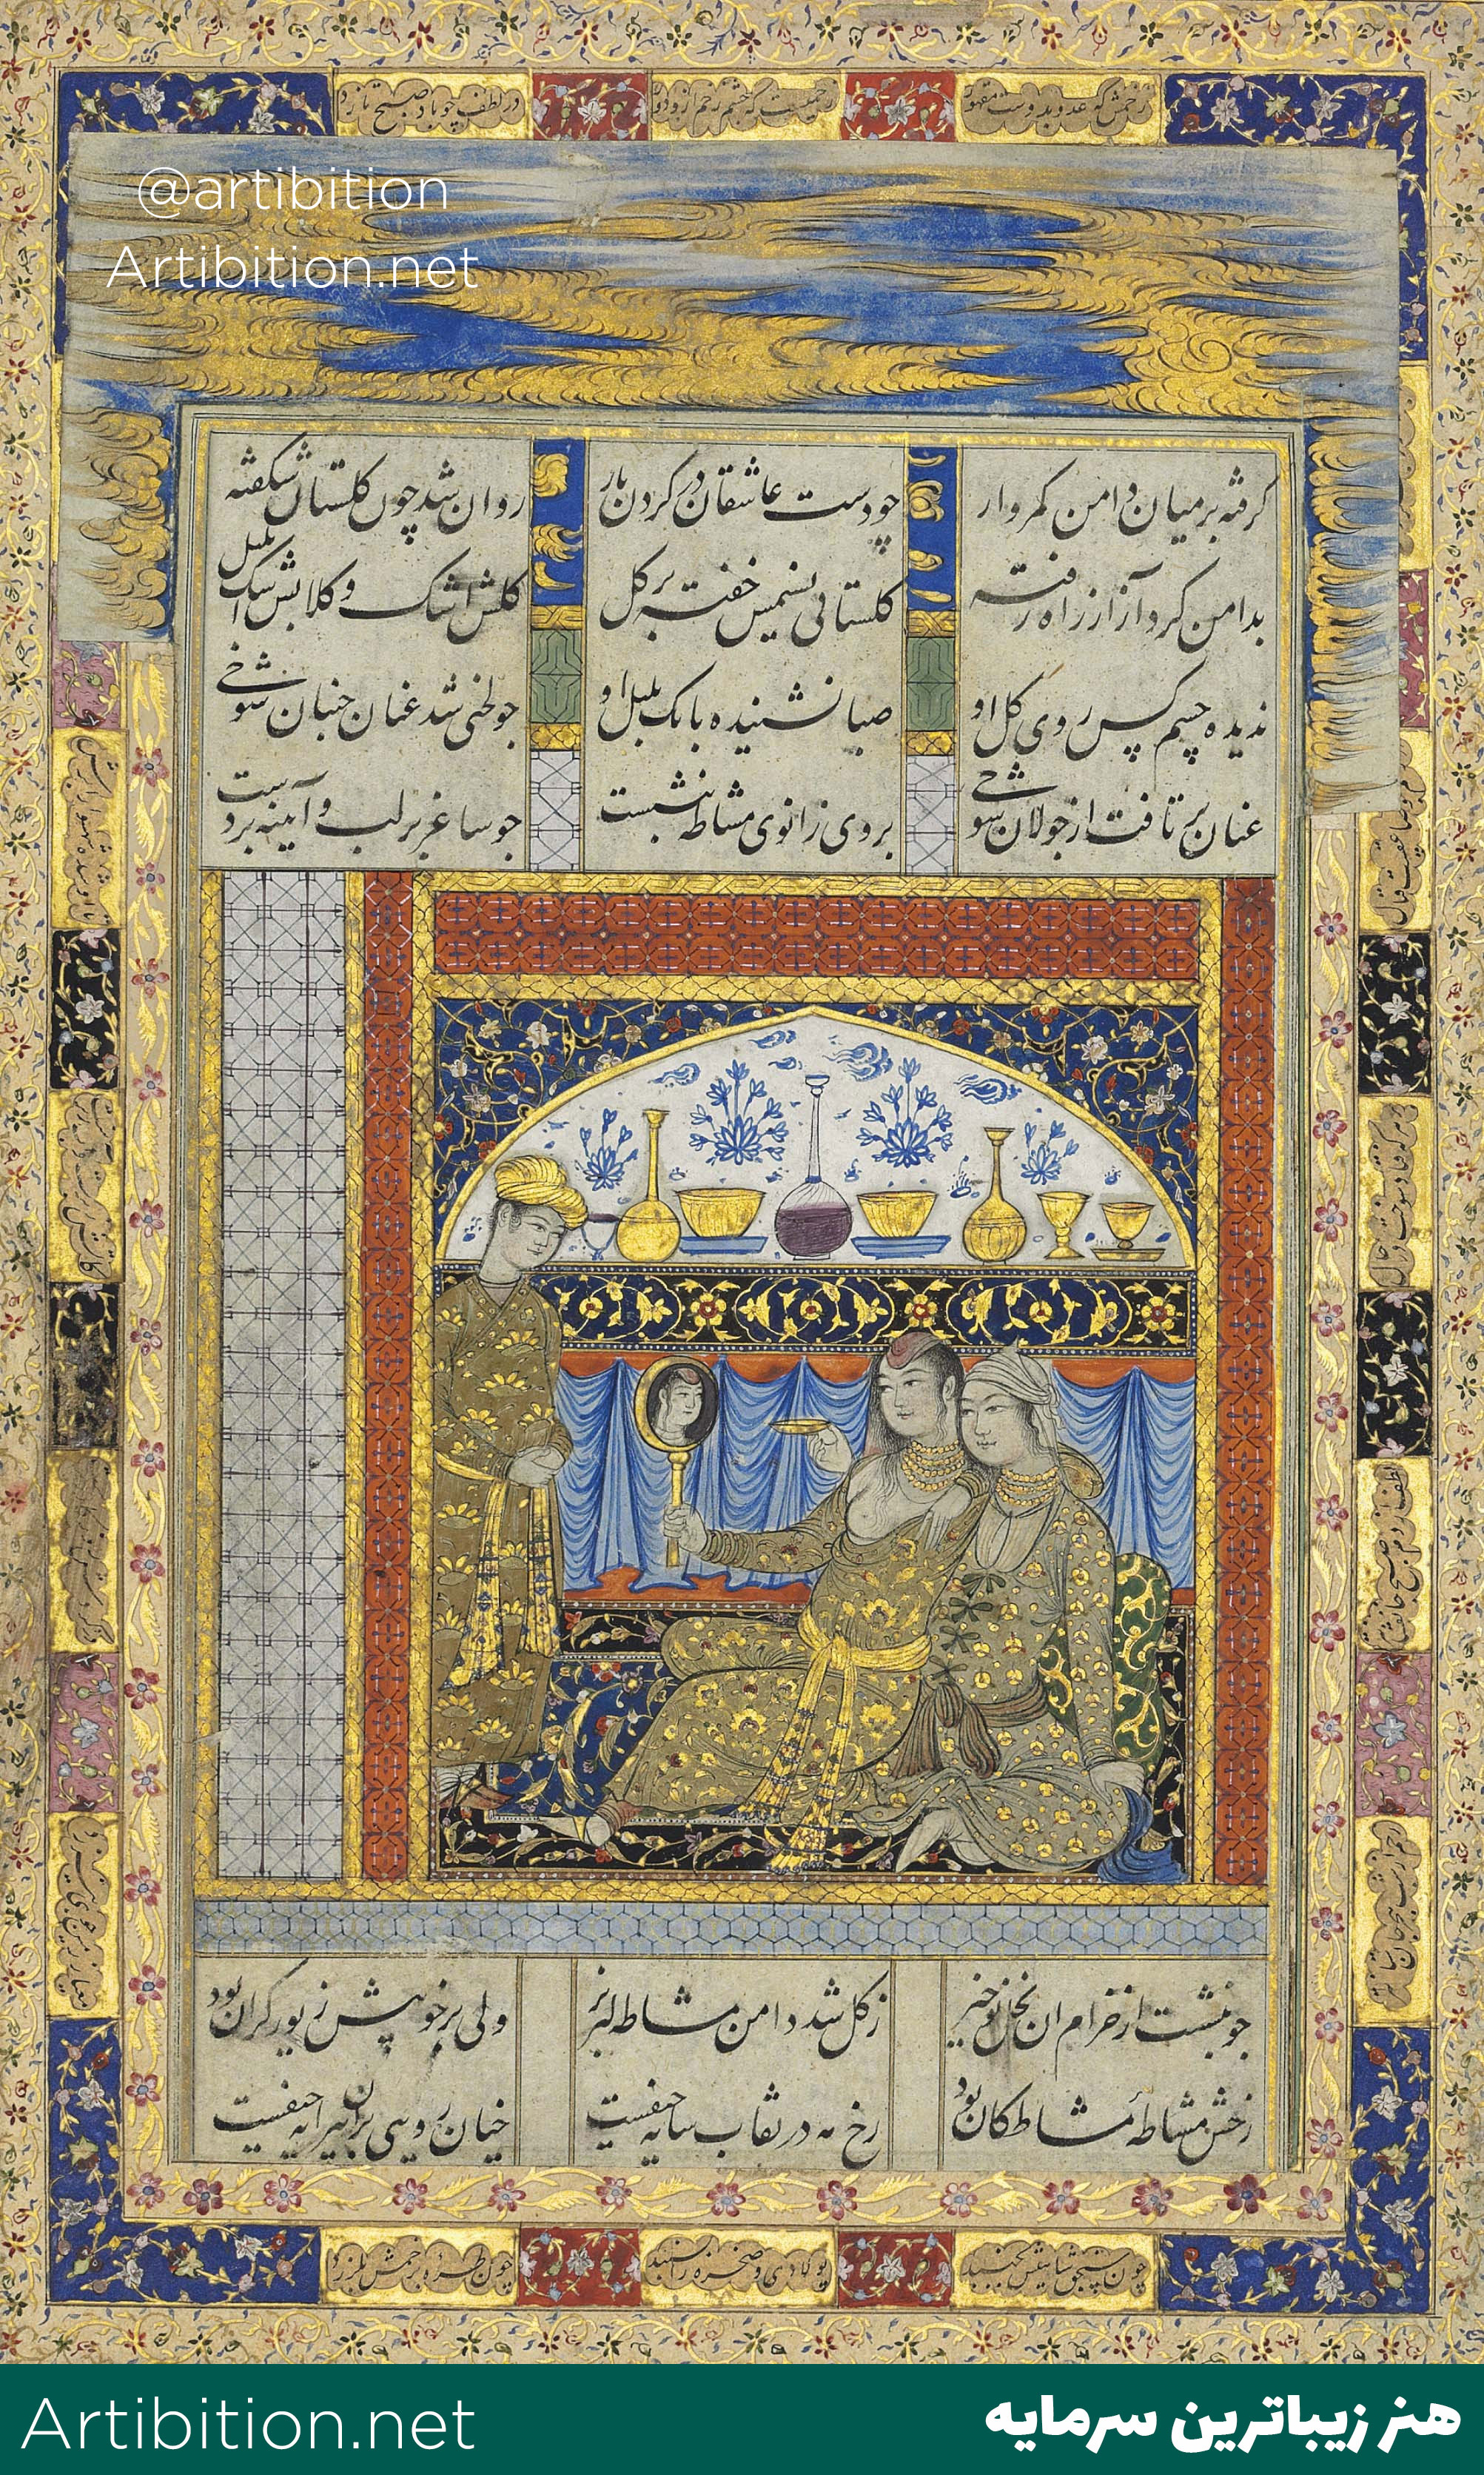 مینیاتور محمد قاسم(عروس برای جشن عروسی آماده میشود) ایران دوره صفوی قرن 17